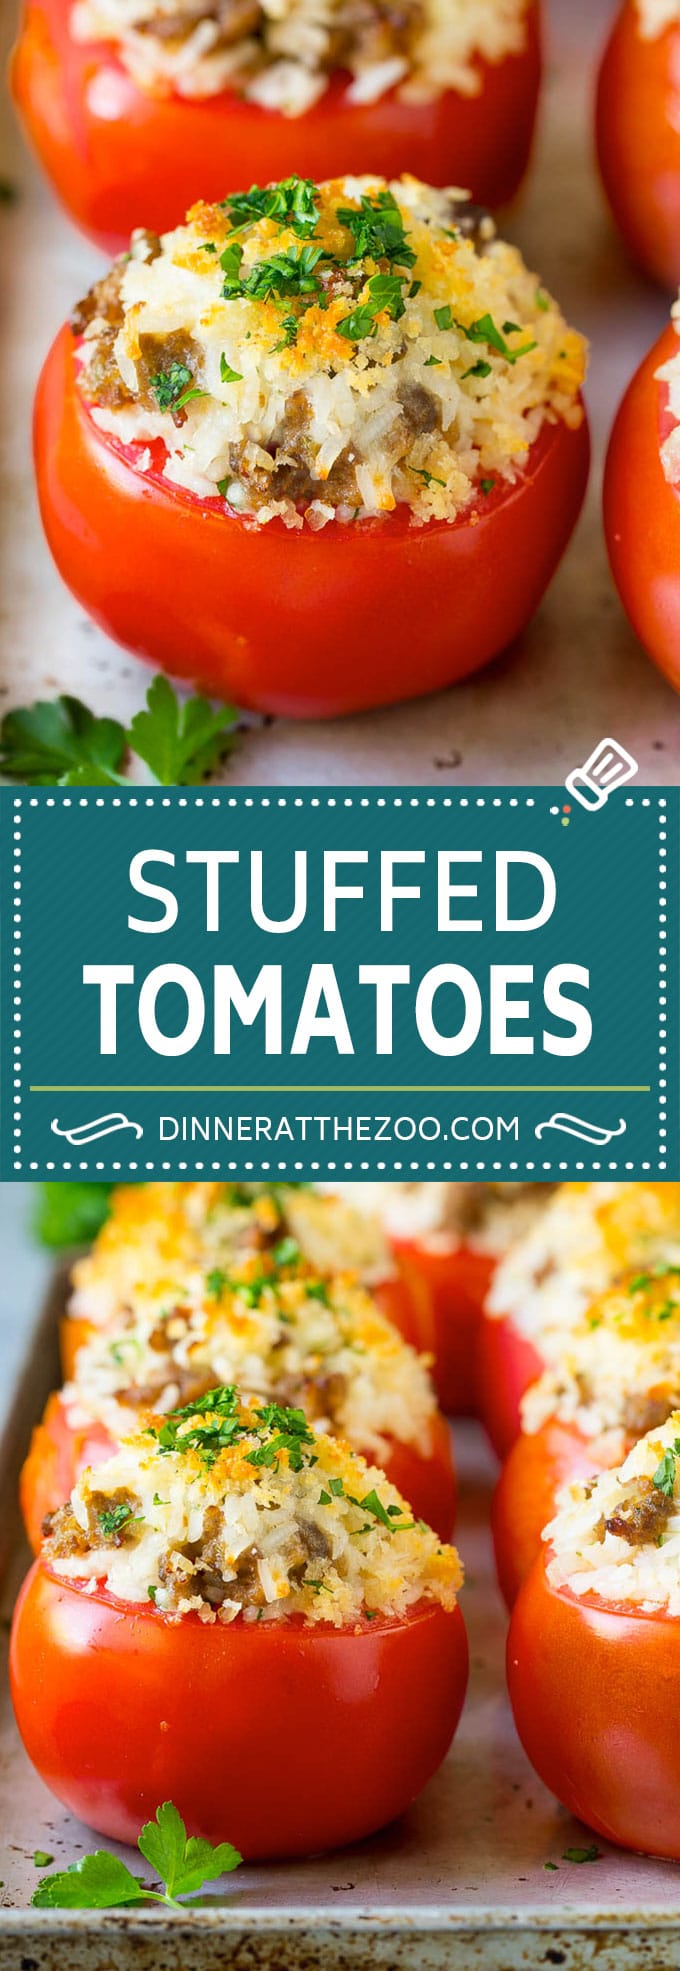 Stuffed Tomatoes Recipe | Sausage Stuffed Tomatoes #tomatoes #sausage #rice #dinner #dinneratthezoo